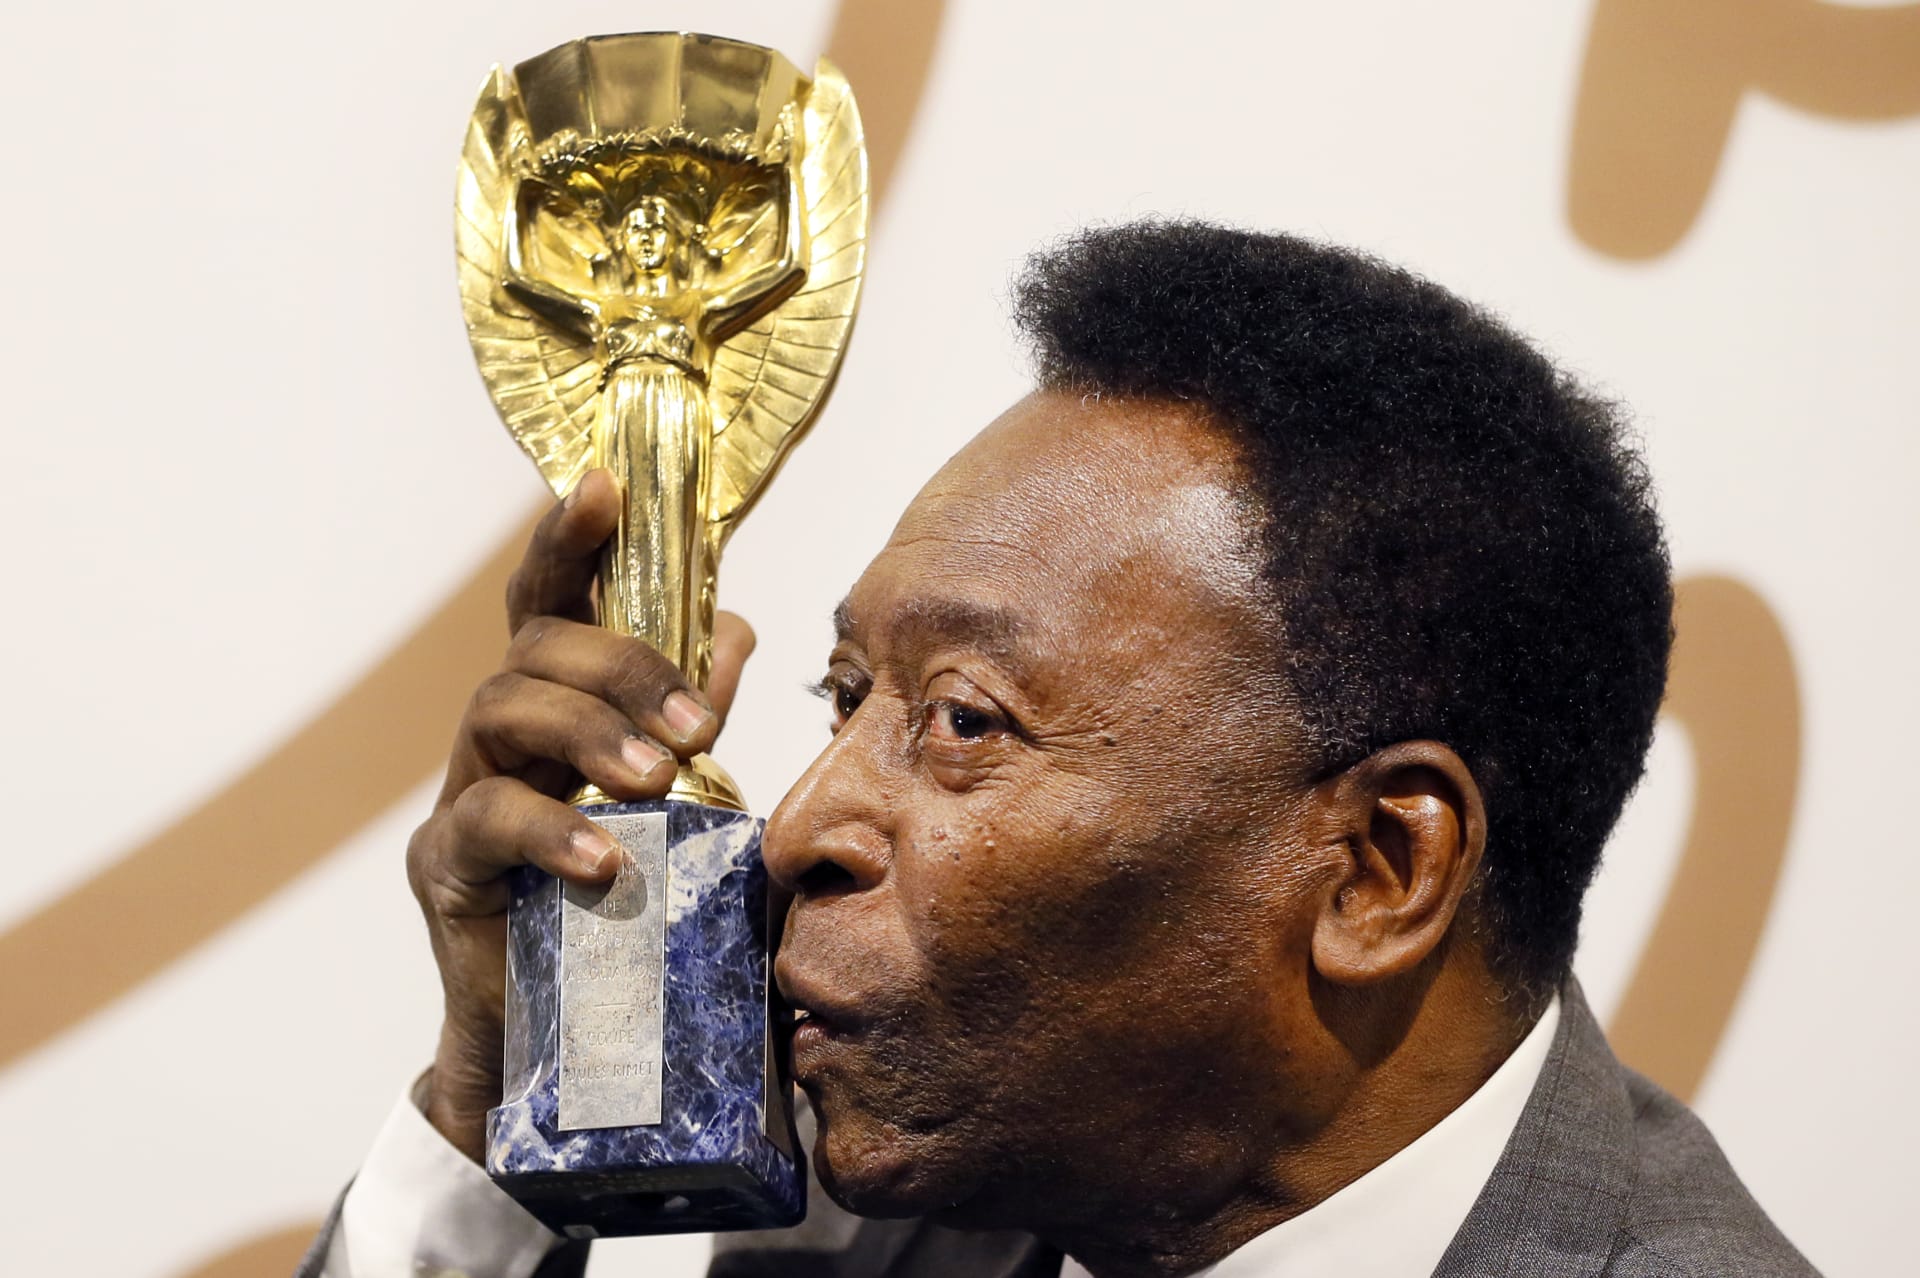 Legendární brazilský fotbalista Pelé s kopií Rimetova poháru, původní trofejí pro mistra světa.